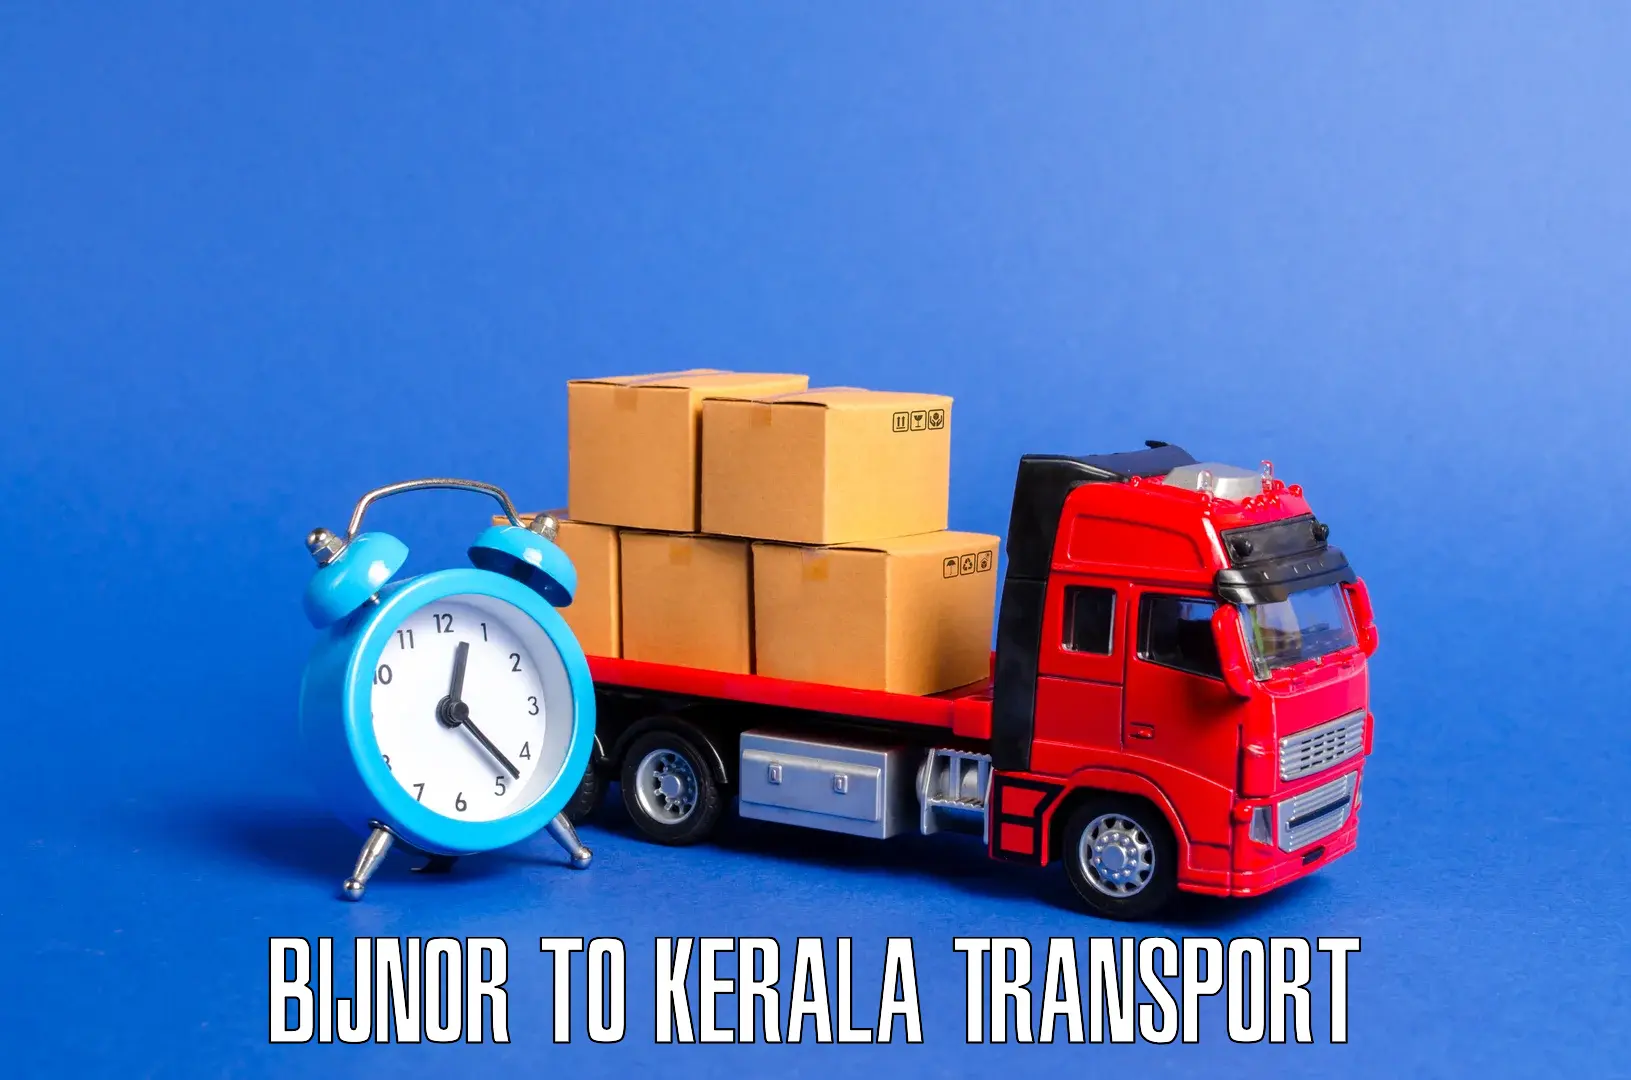 Cargo train transport services in Bijnor to IIIT Kottayam